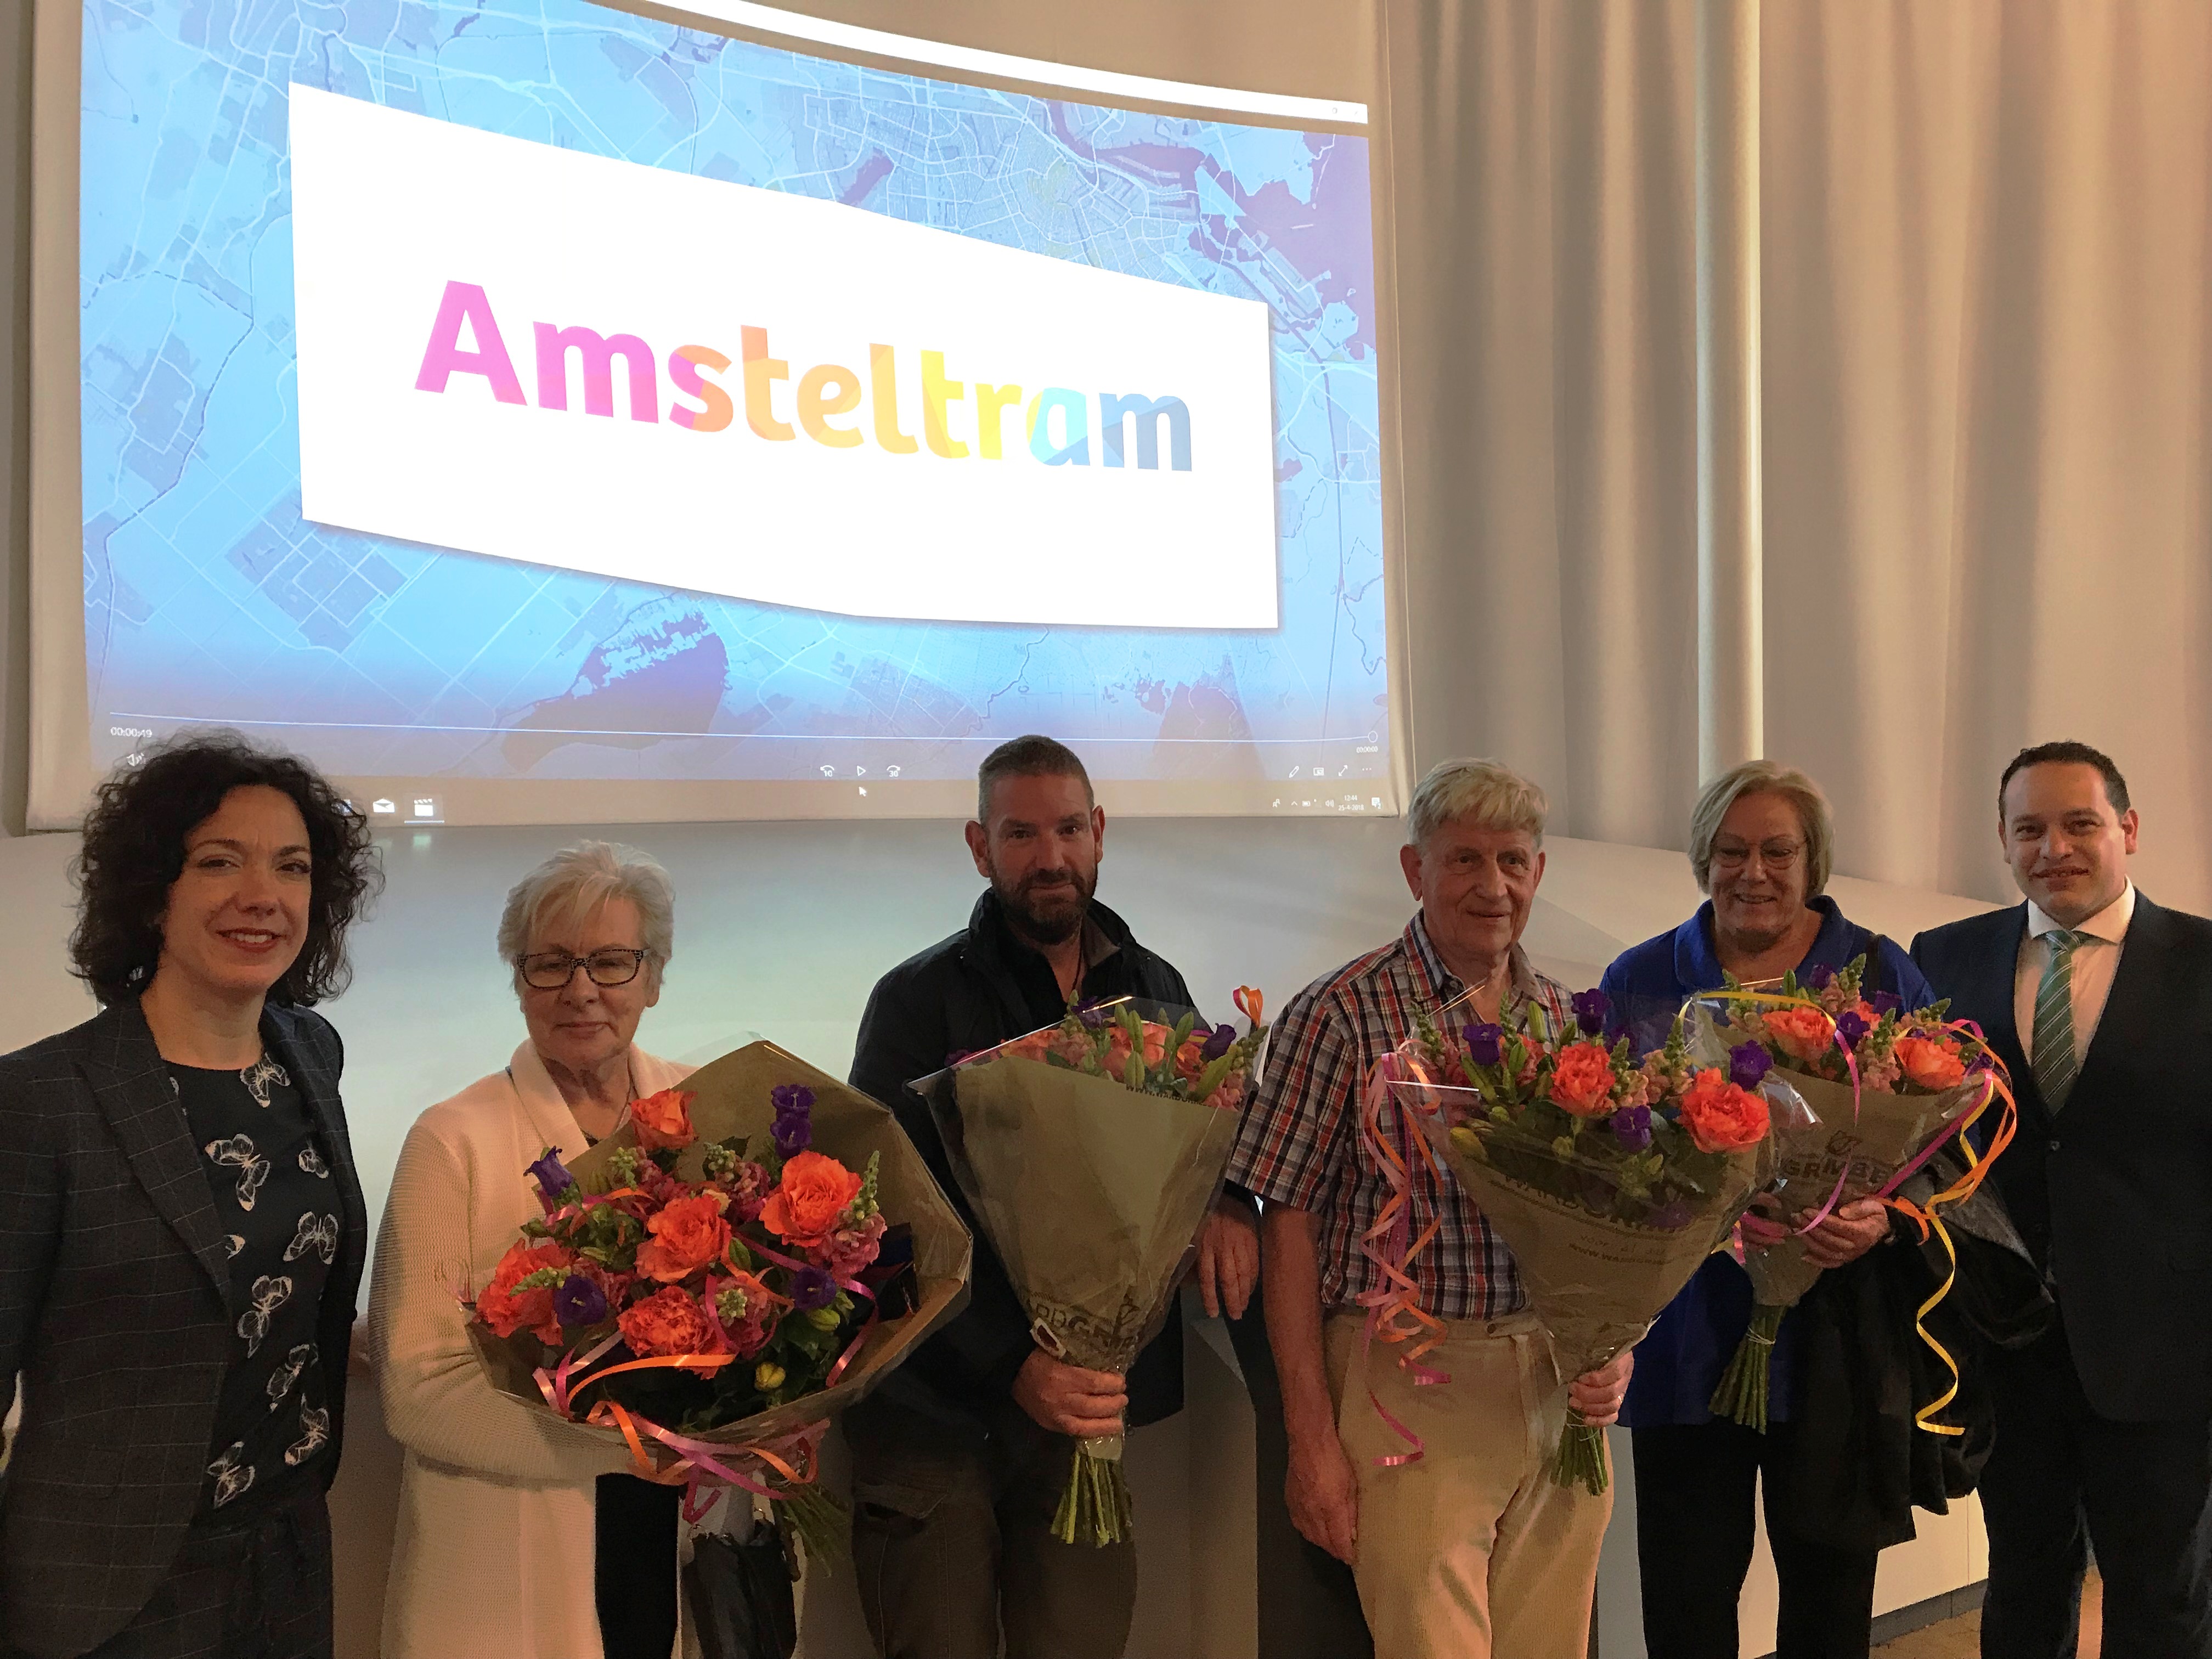 De winnaars tezamen met wethouders Polak van Uithoorn en Veeningen van Amstelveen waren woensdag 25 april allemaal aanwezig bij de onthulling van de nieuwe naam en bijbehorende huisstijl.